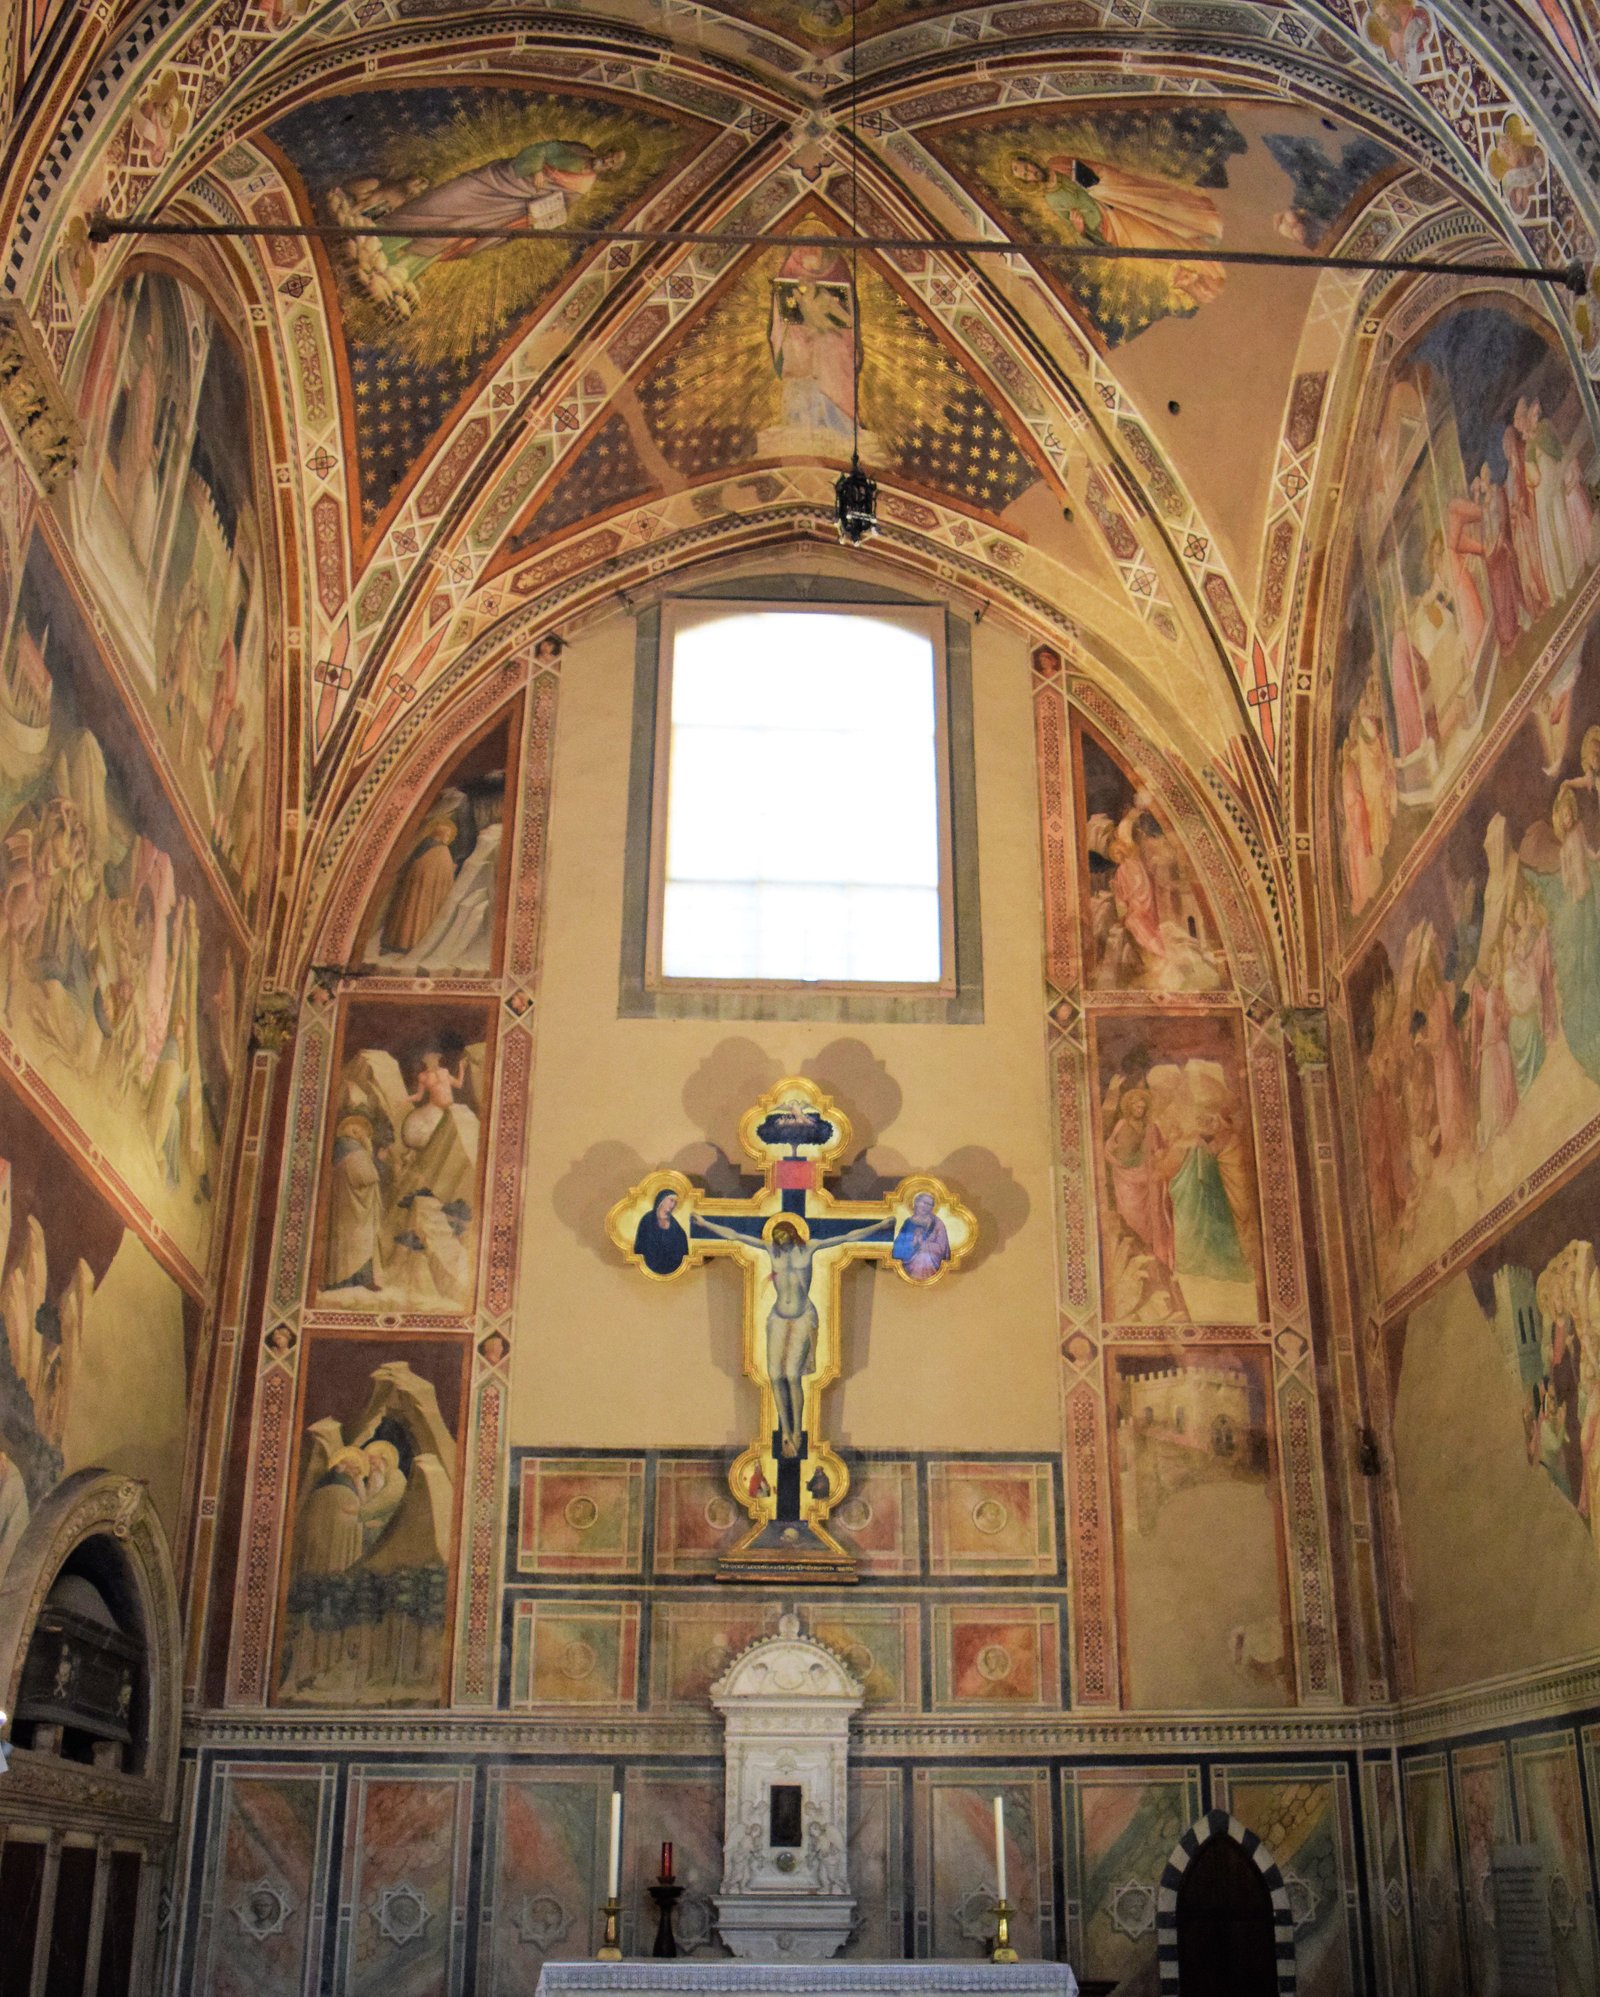 Frescoes from Santa Croce Church